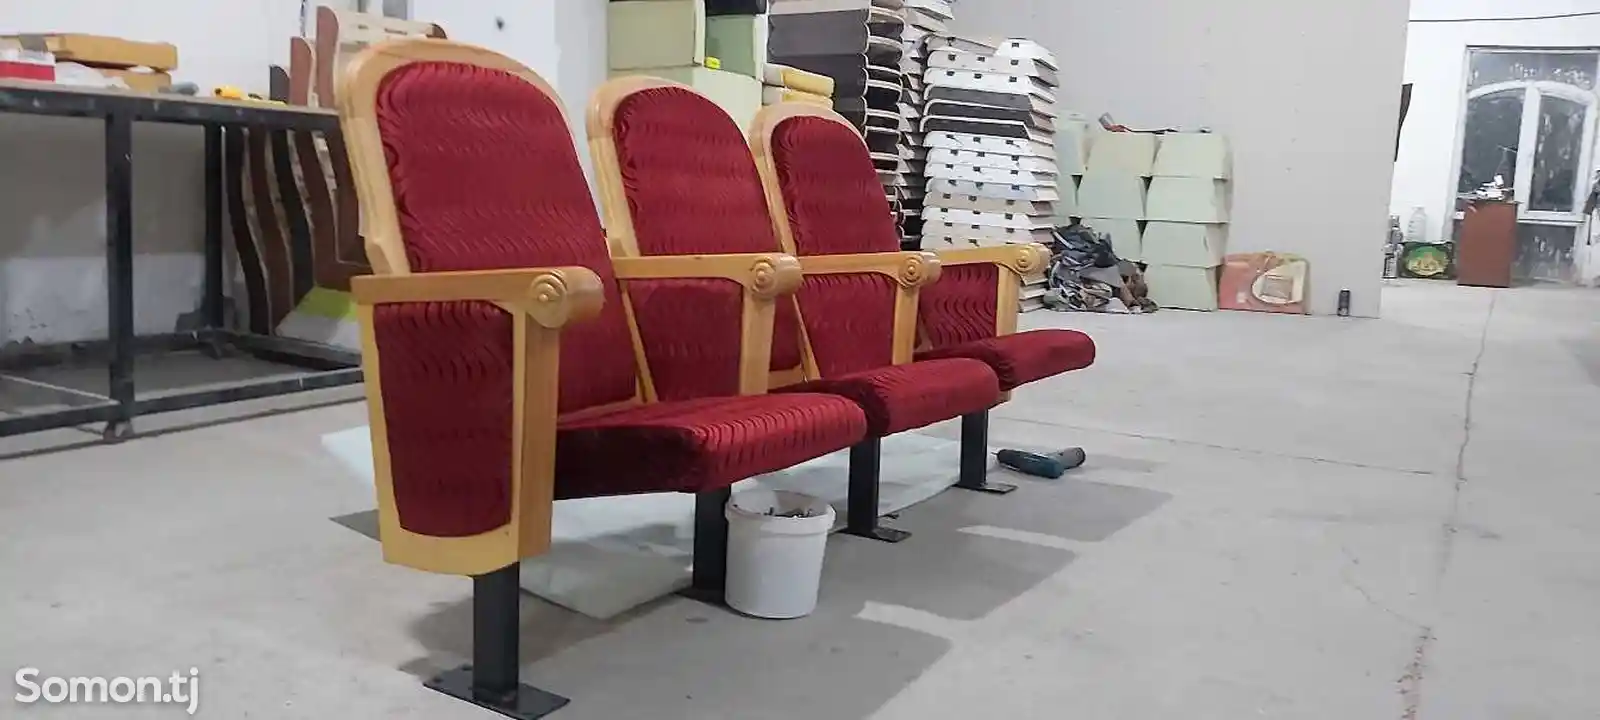 Театральные кресла-1